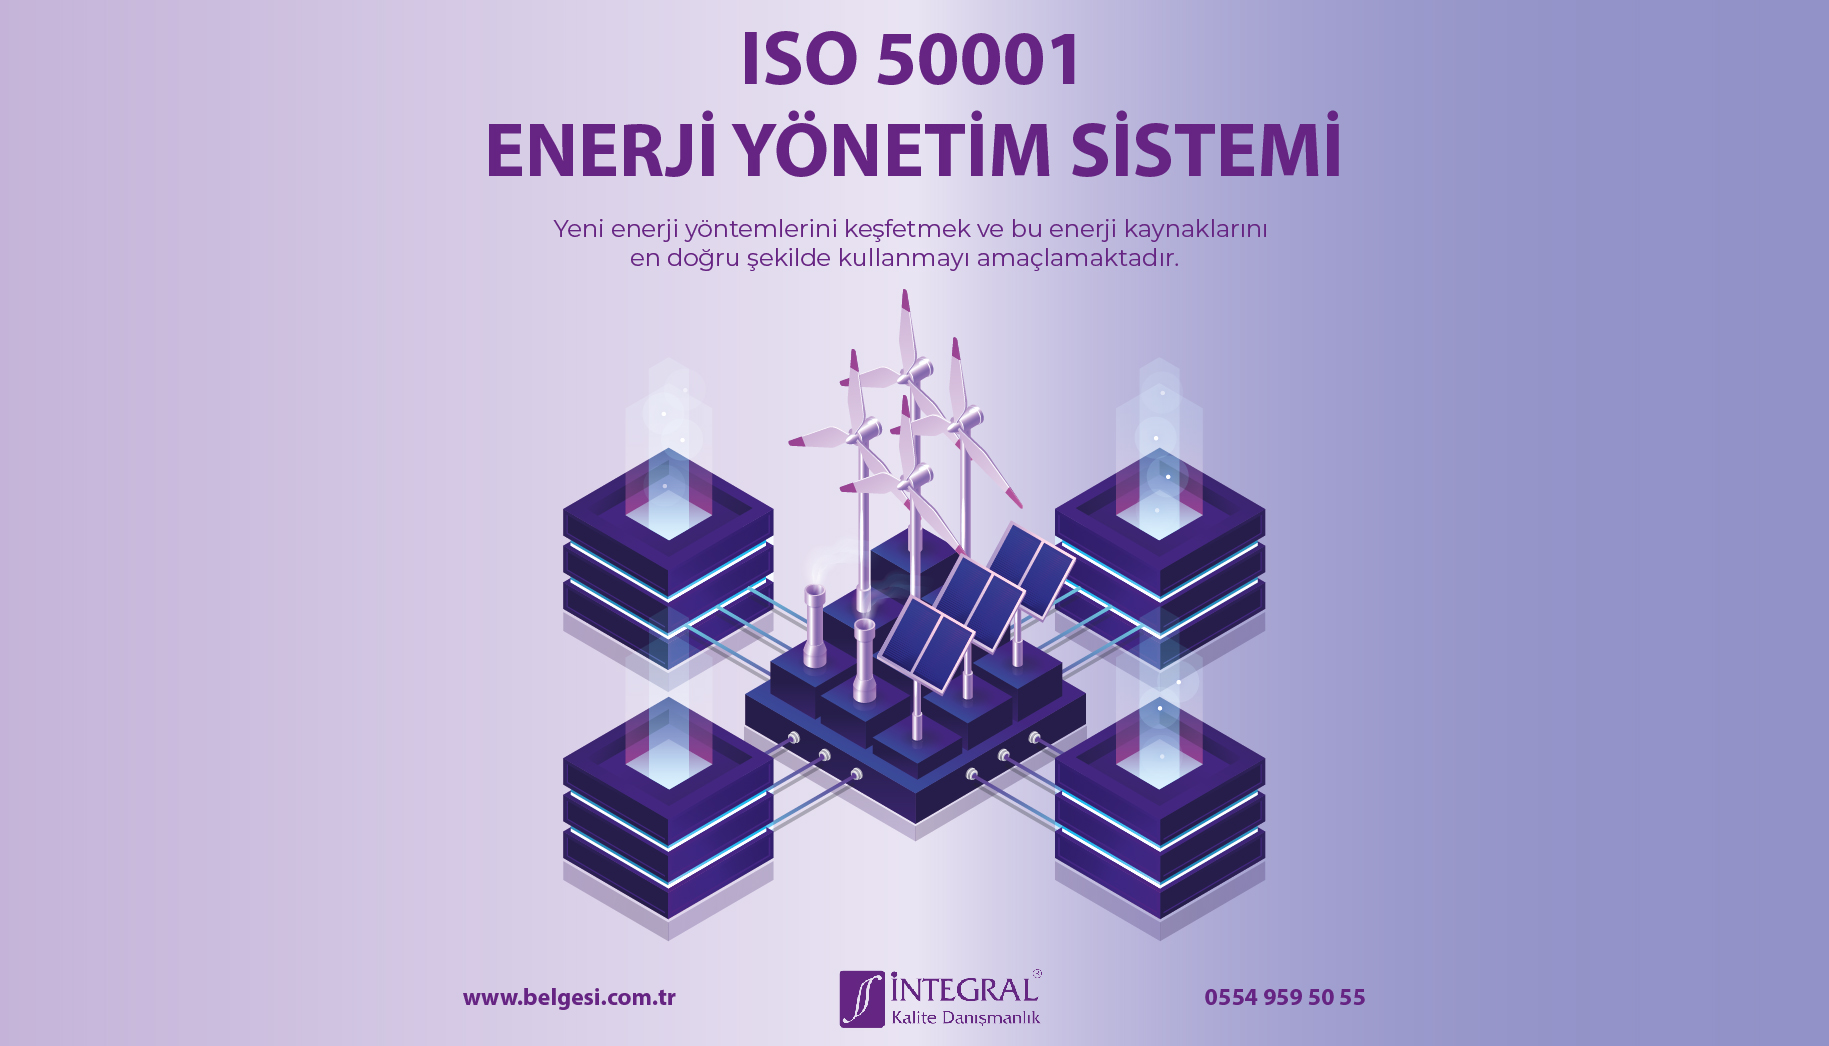 iso-50001-enerji-yonetim-sistemi - ISO 50001 Belgesi Nedir? ISO 50001 Enerji Yönetim Sistemi Belgesi- ISO 50001 Enerji Yönetim Sisteminin Faydaları - ISO 50001 Belgesi Kimler Almalıdır? - ISO 50001 Belgesinin Alınması